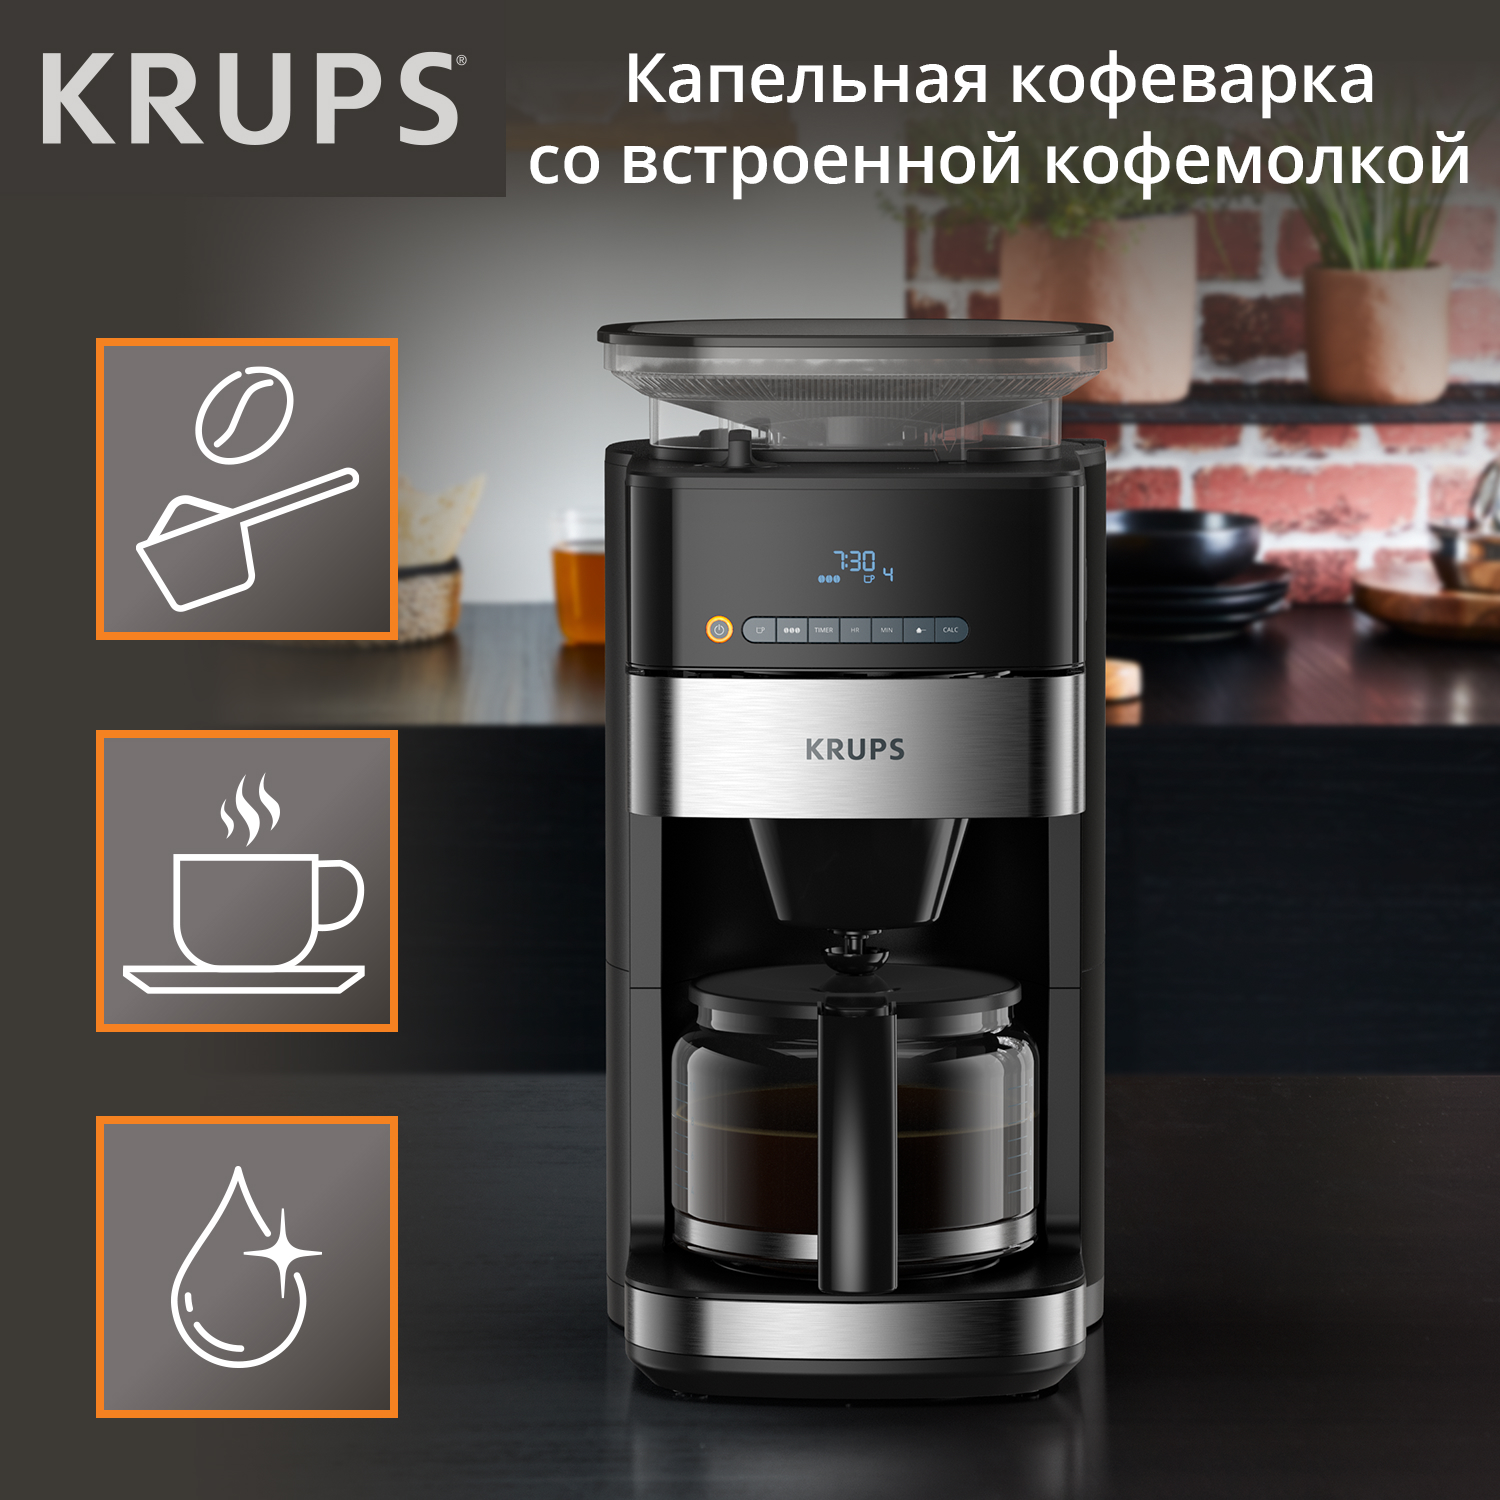 Кофеварка капельного типа Krups Grind Aroma KM832810 с кофемолкой, черный/серебристый